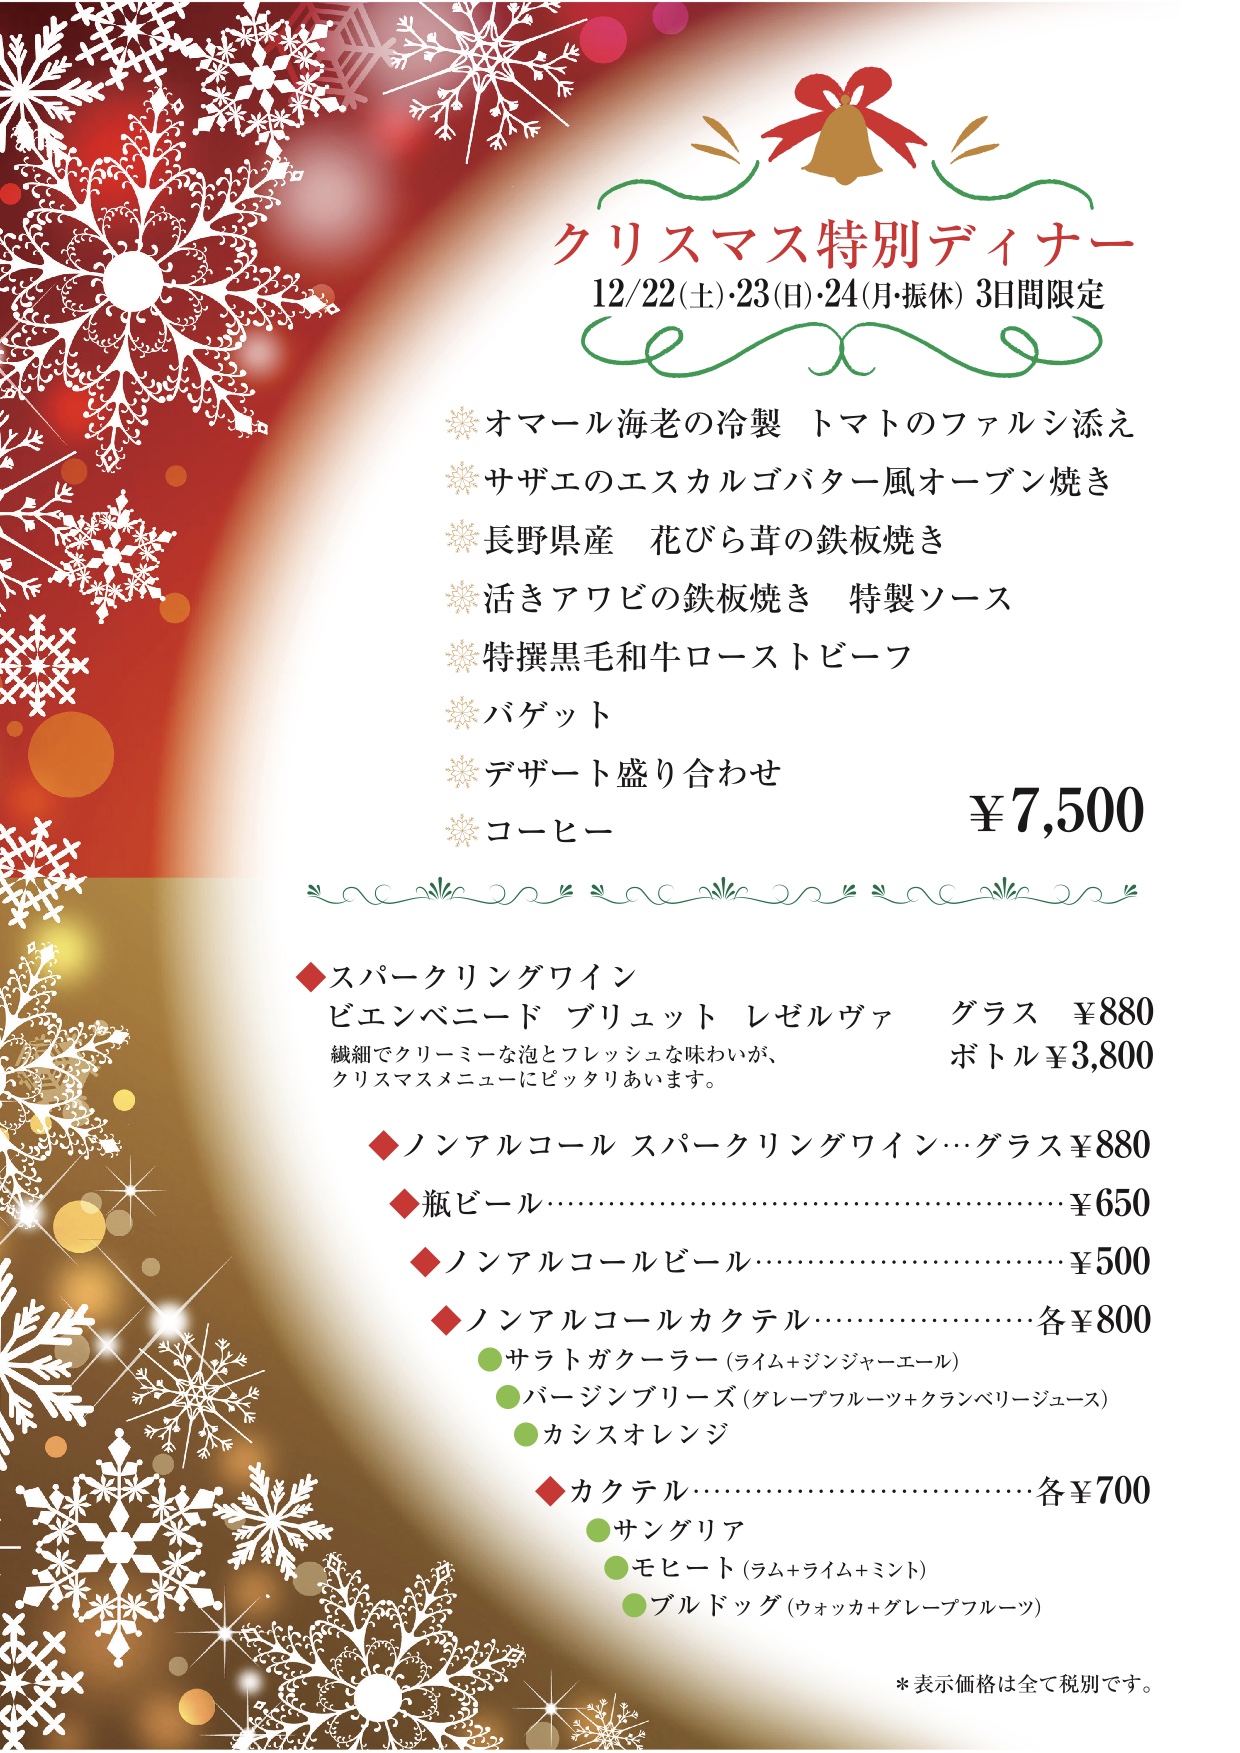 福山でクリスマスディナーなら壱乃藏 壱乃藏 いちのくら 福山市のレストラン 記念日ワインとあぶり焼き